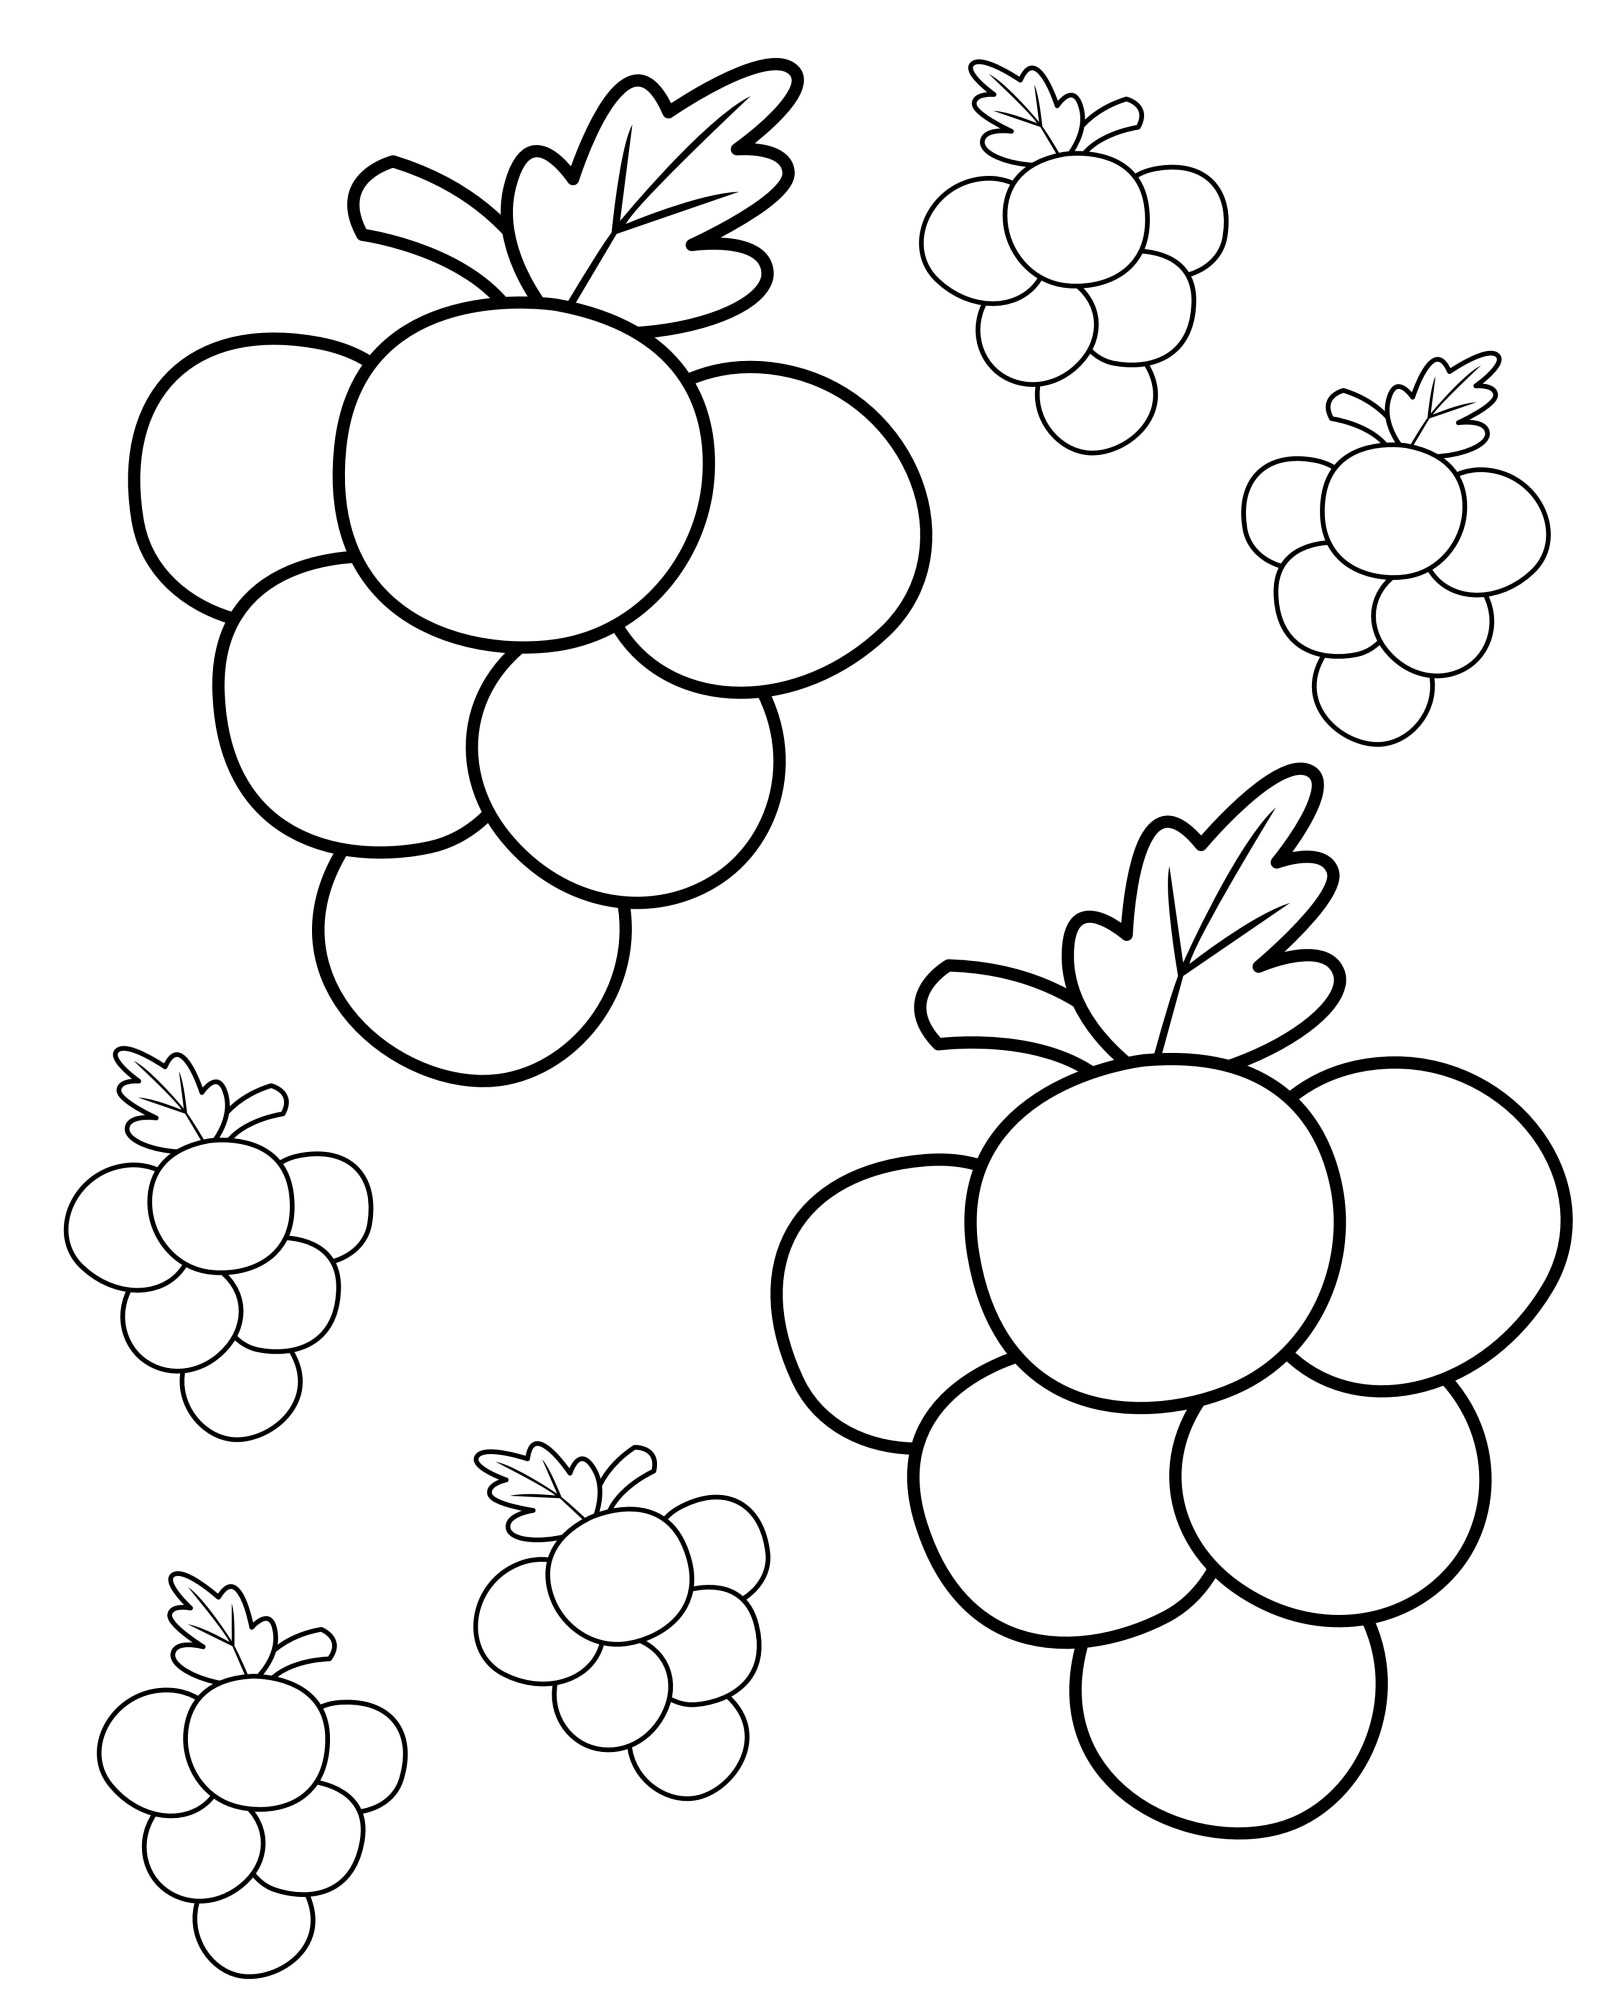 Раскраска для детей: грозди спелого винограда